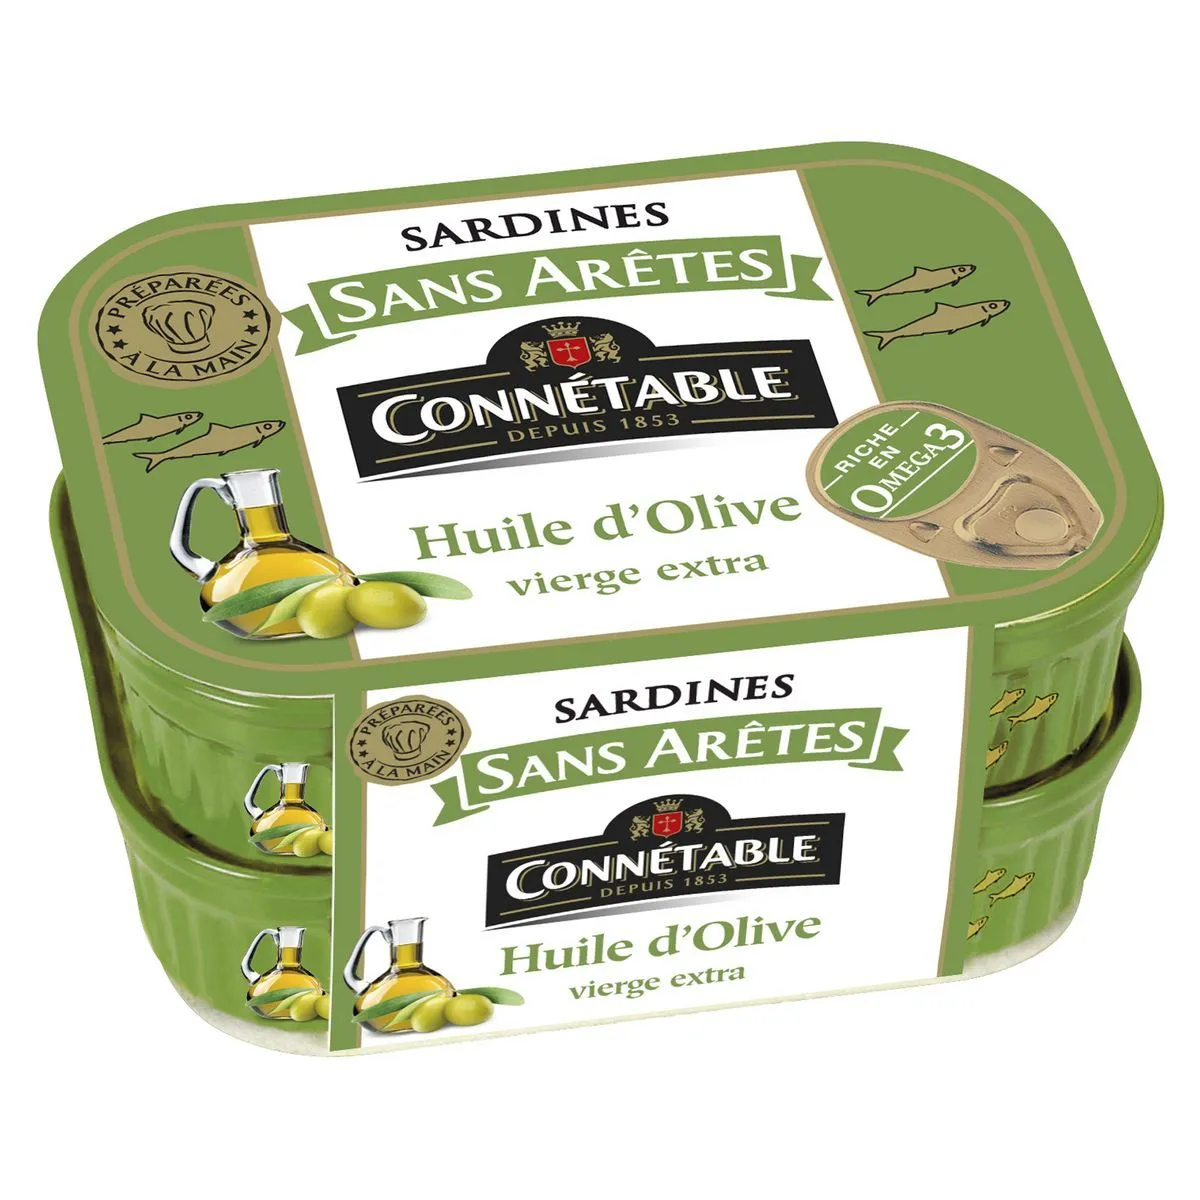  sardines sans arêtes à l'huile d'olive connétable